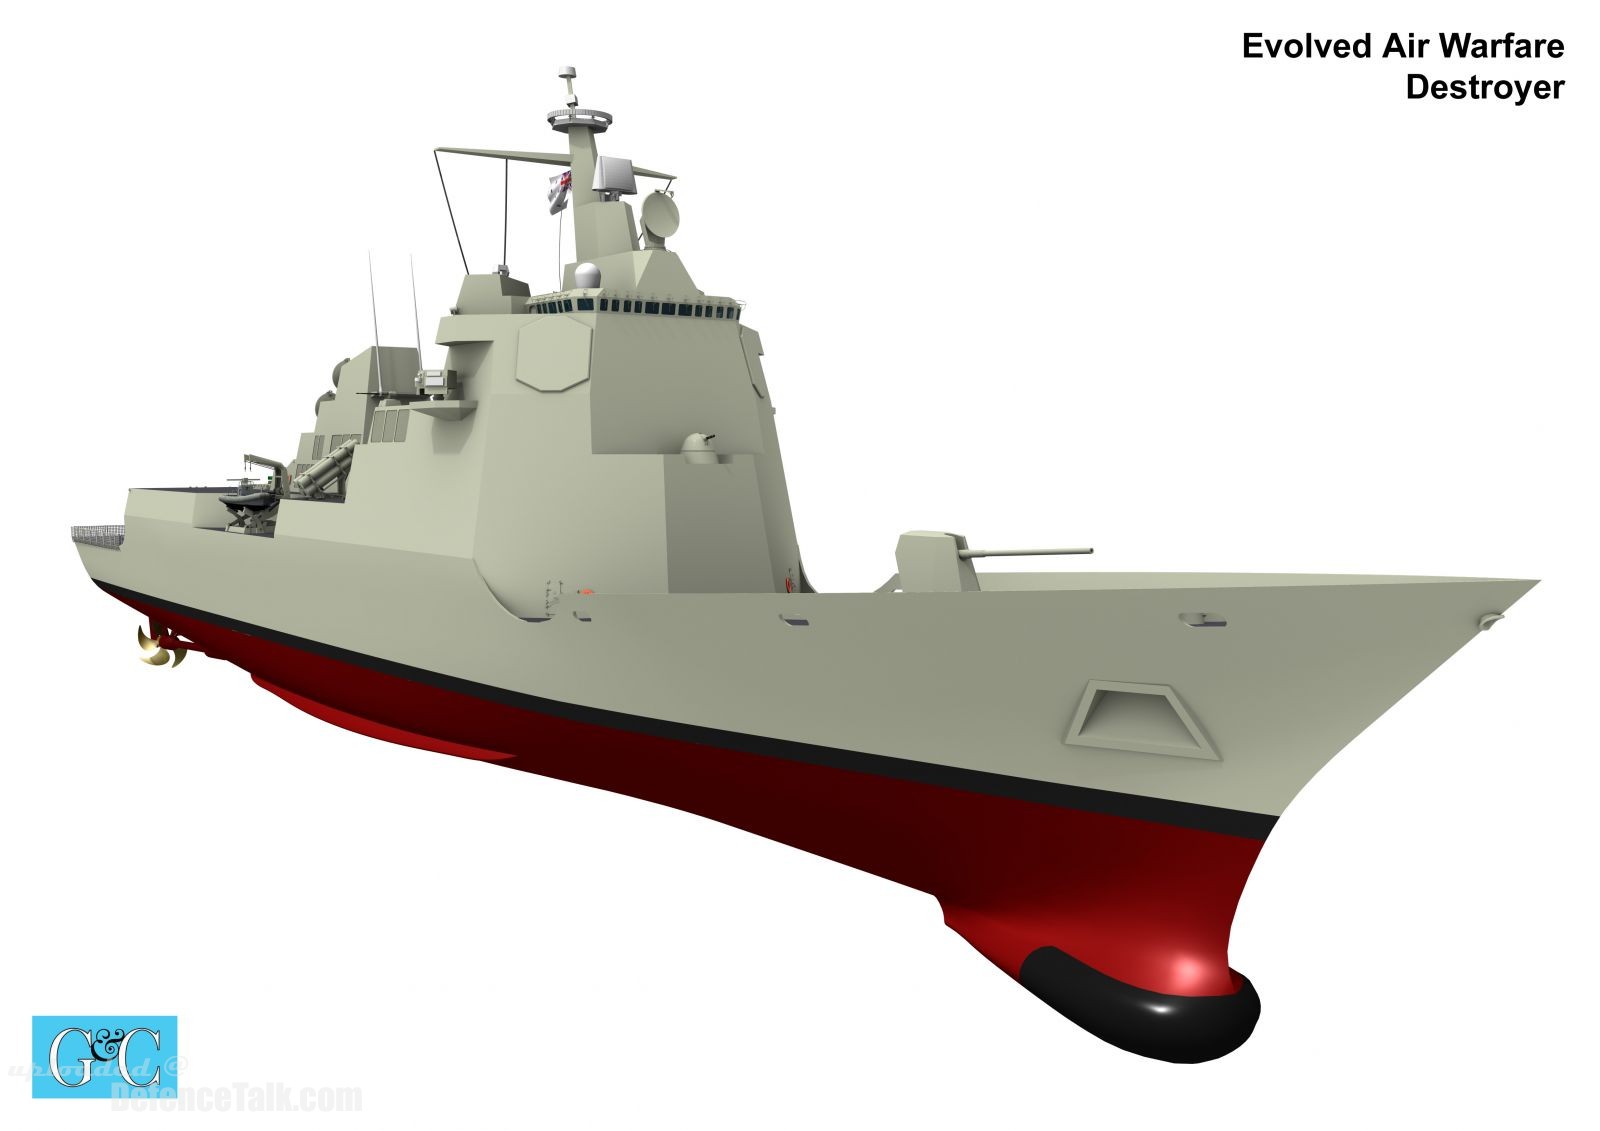 Australia's Air Warfare Destroyer, Evolved Design